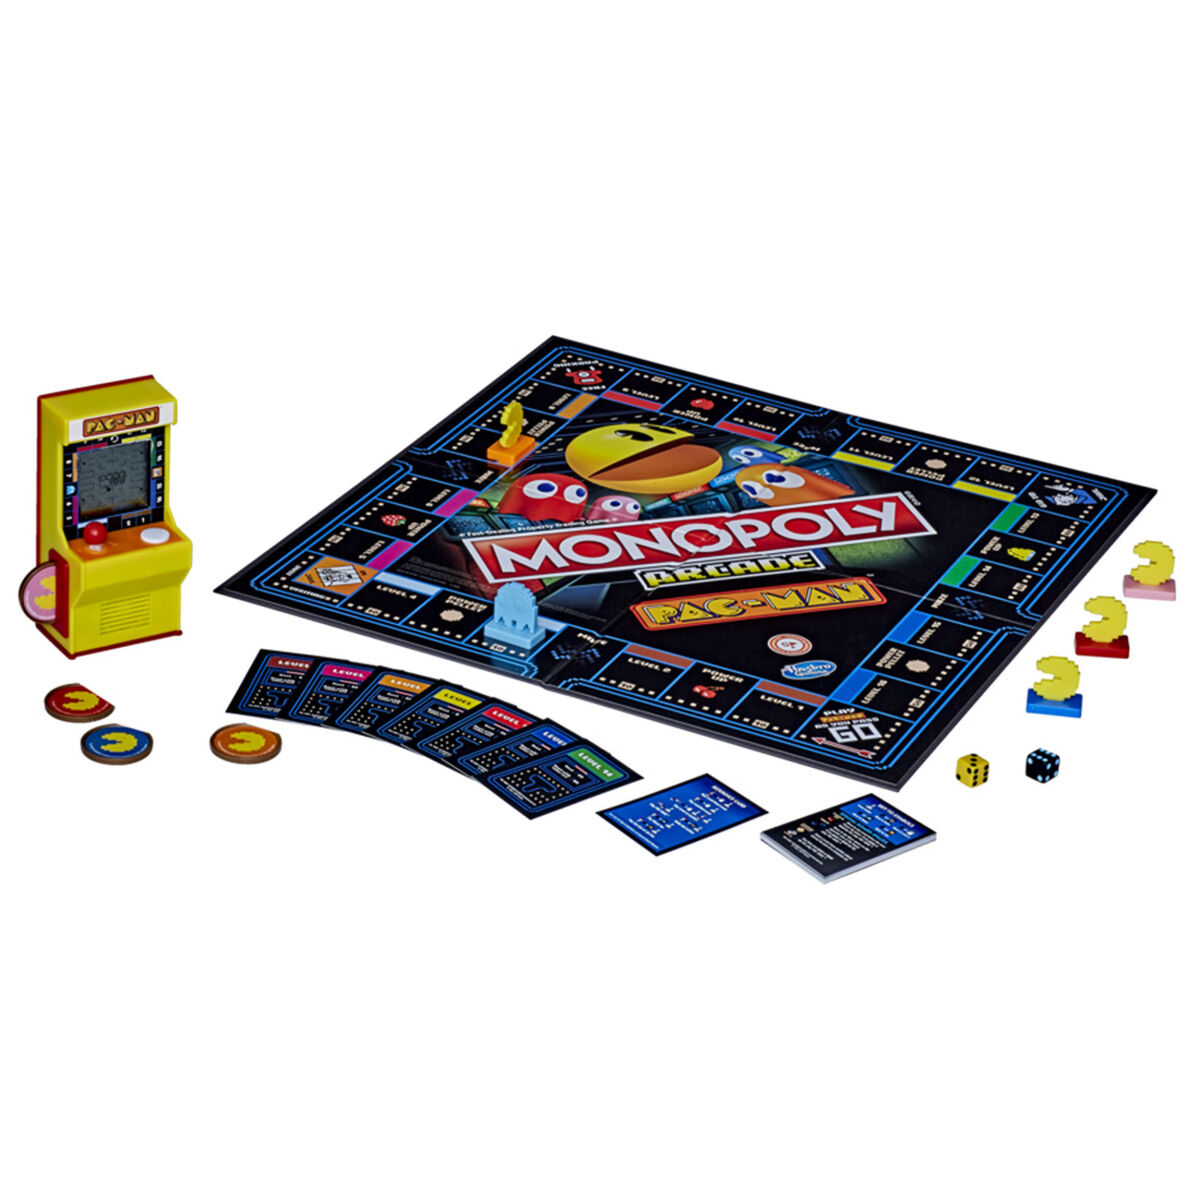 Juego Monopoly Arcade Pac-Man